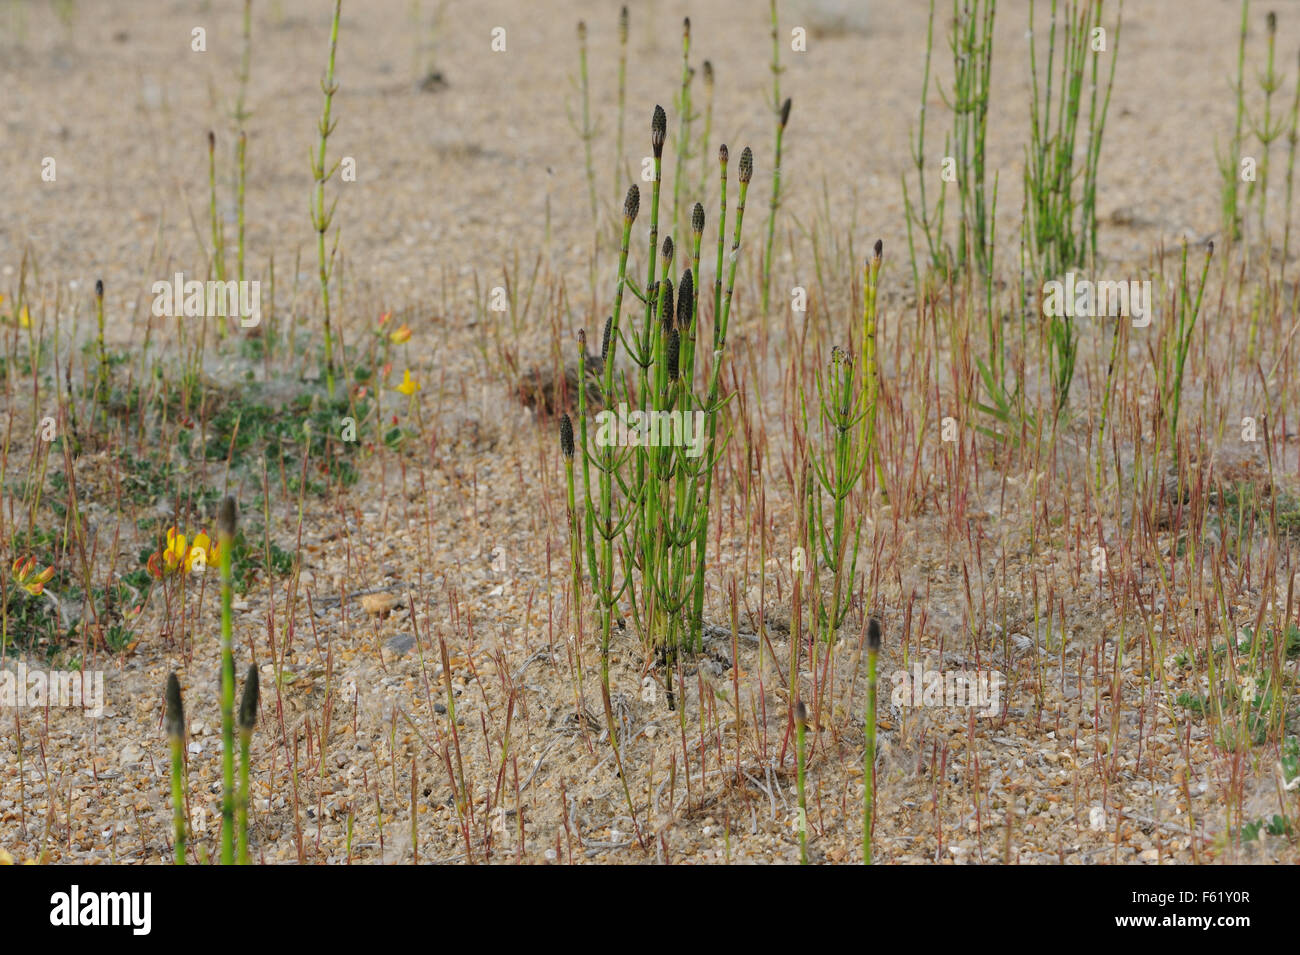 Cone-like, strobiles porteuses de spores à l'extrémité des tiges de prêle des champs, la prêle commune ou mare's tail (Equisetum arvense) croissant dans le sable Banque D'Images